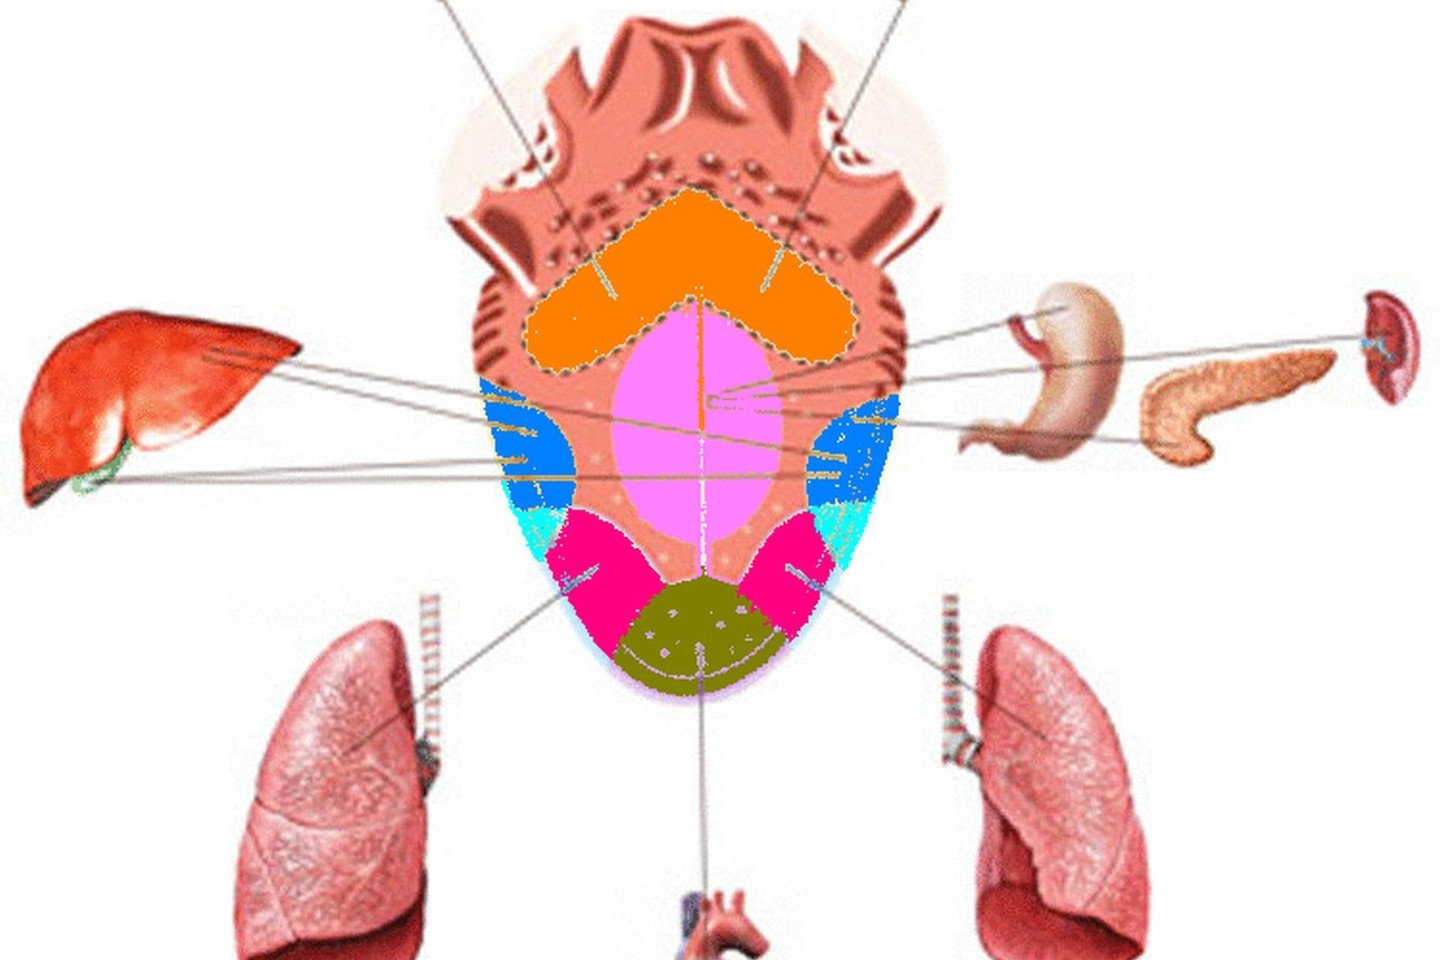 Remiantis Arjuveda, kiekvienas liežuvio plotas atspindi tam tikrų organų ar jų sistemų veiklą.<br>Wikipedia.org nuotr.